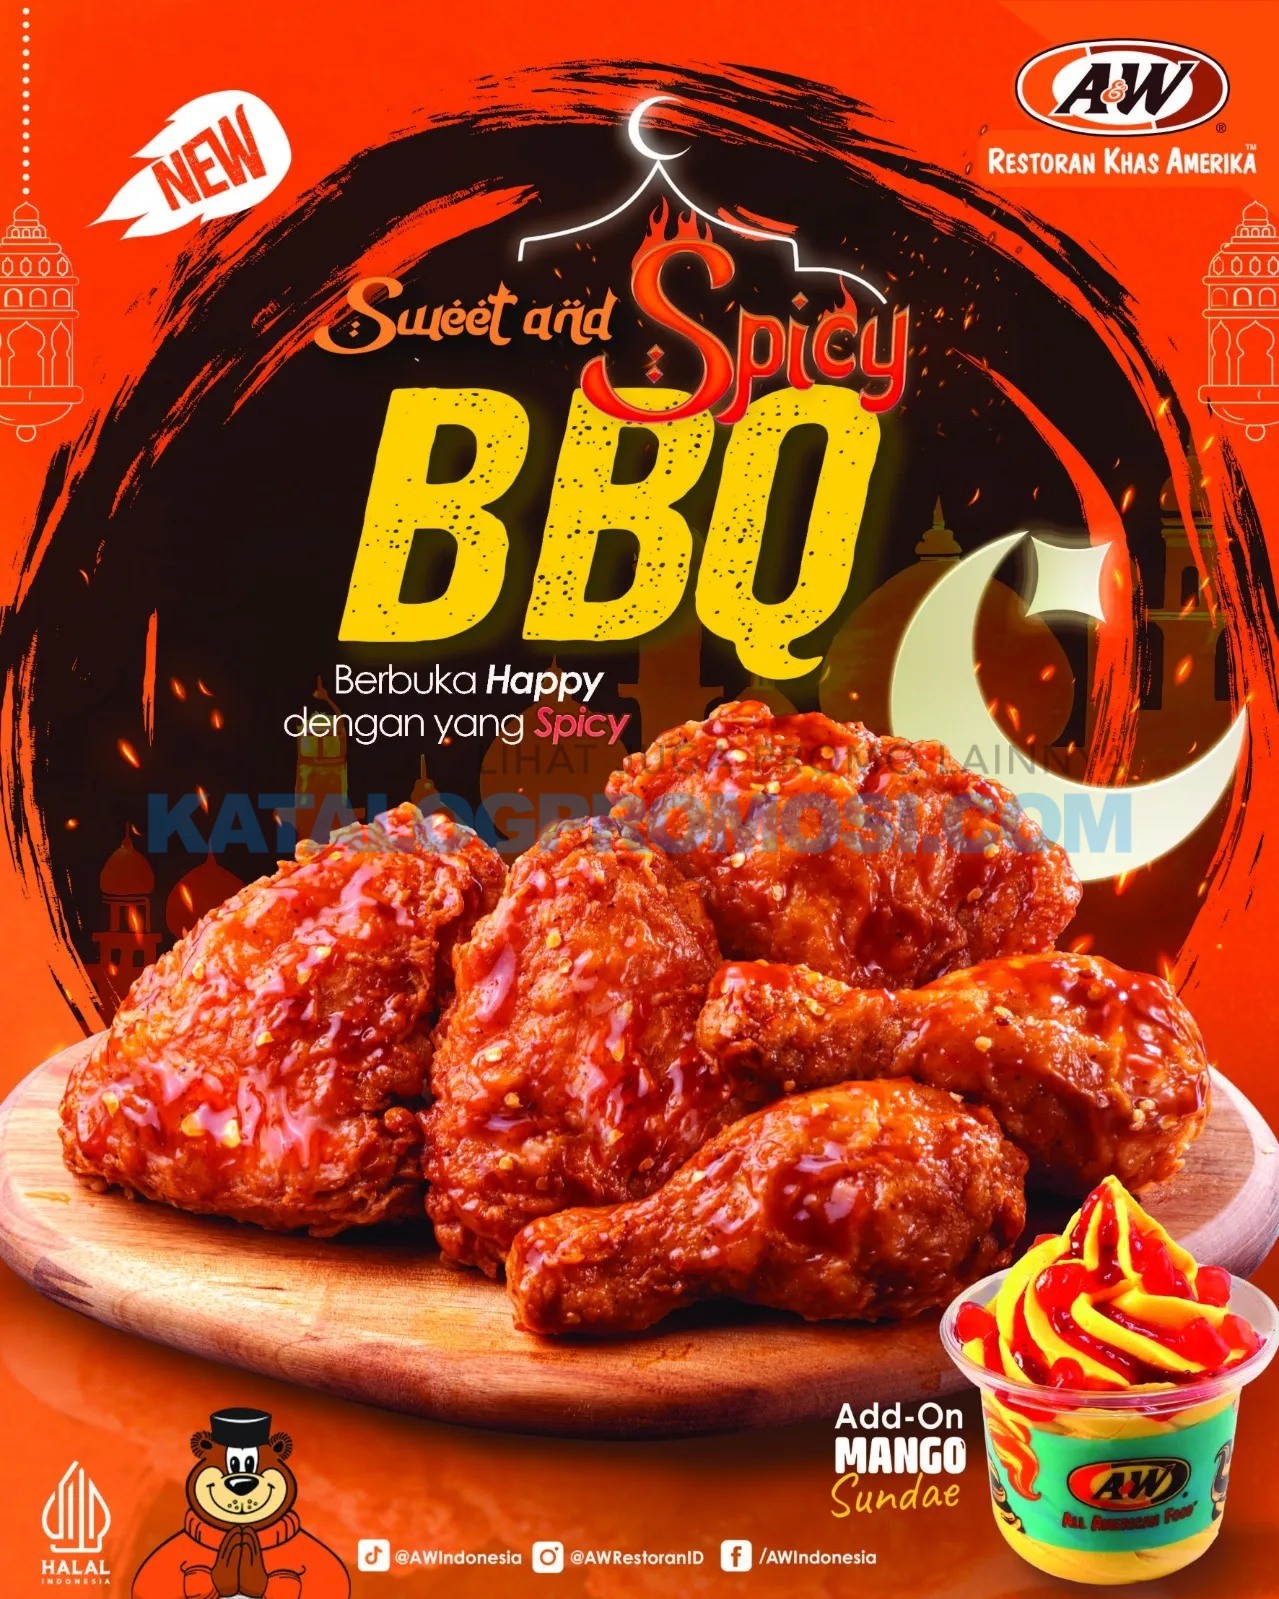 BARU! A&W Sweet & Spicy BBQ! Paketnya mulai Rp. 52ribuan aja